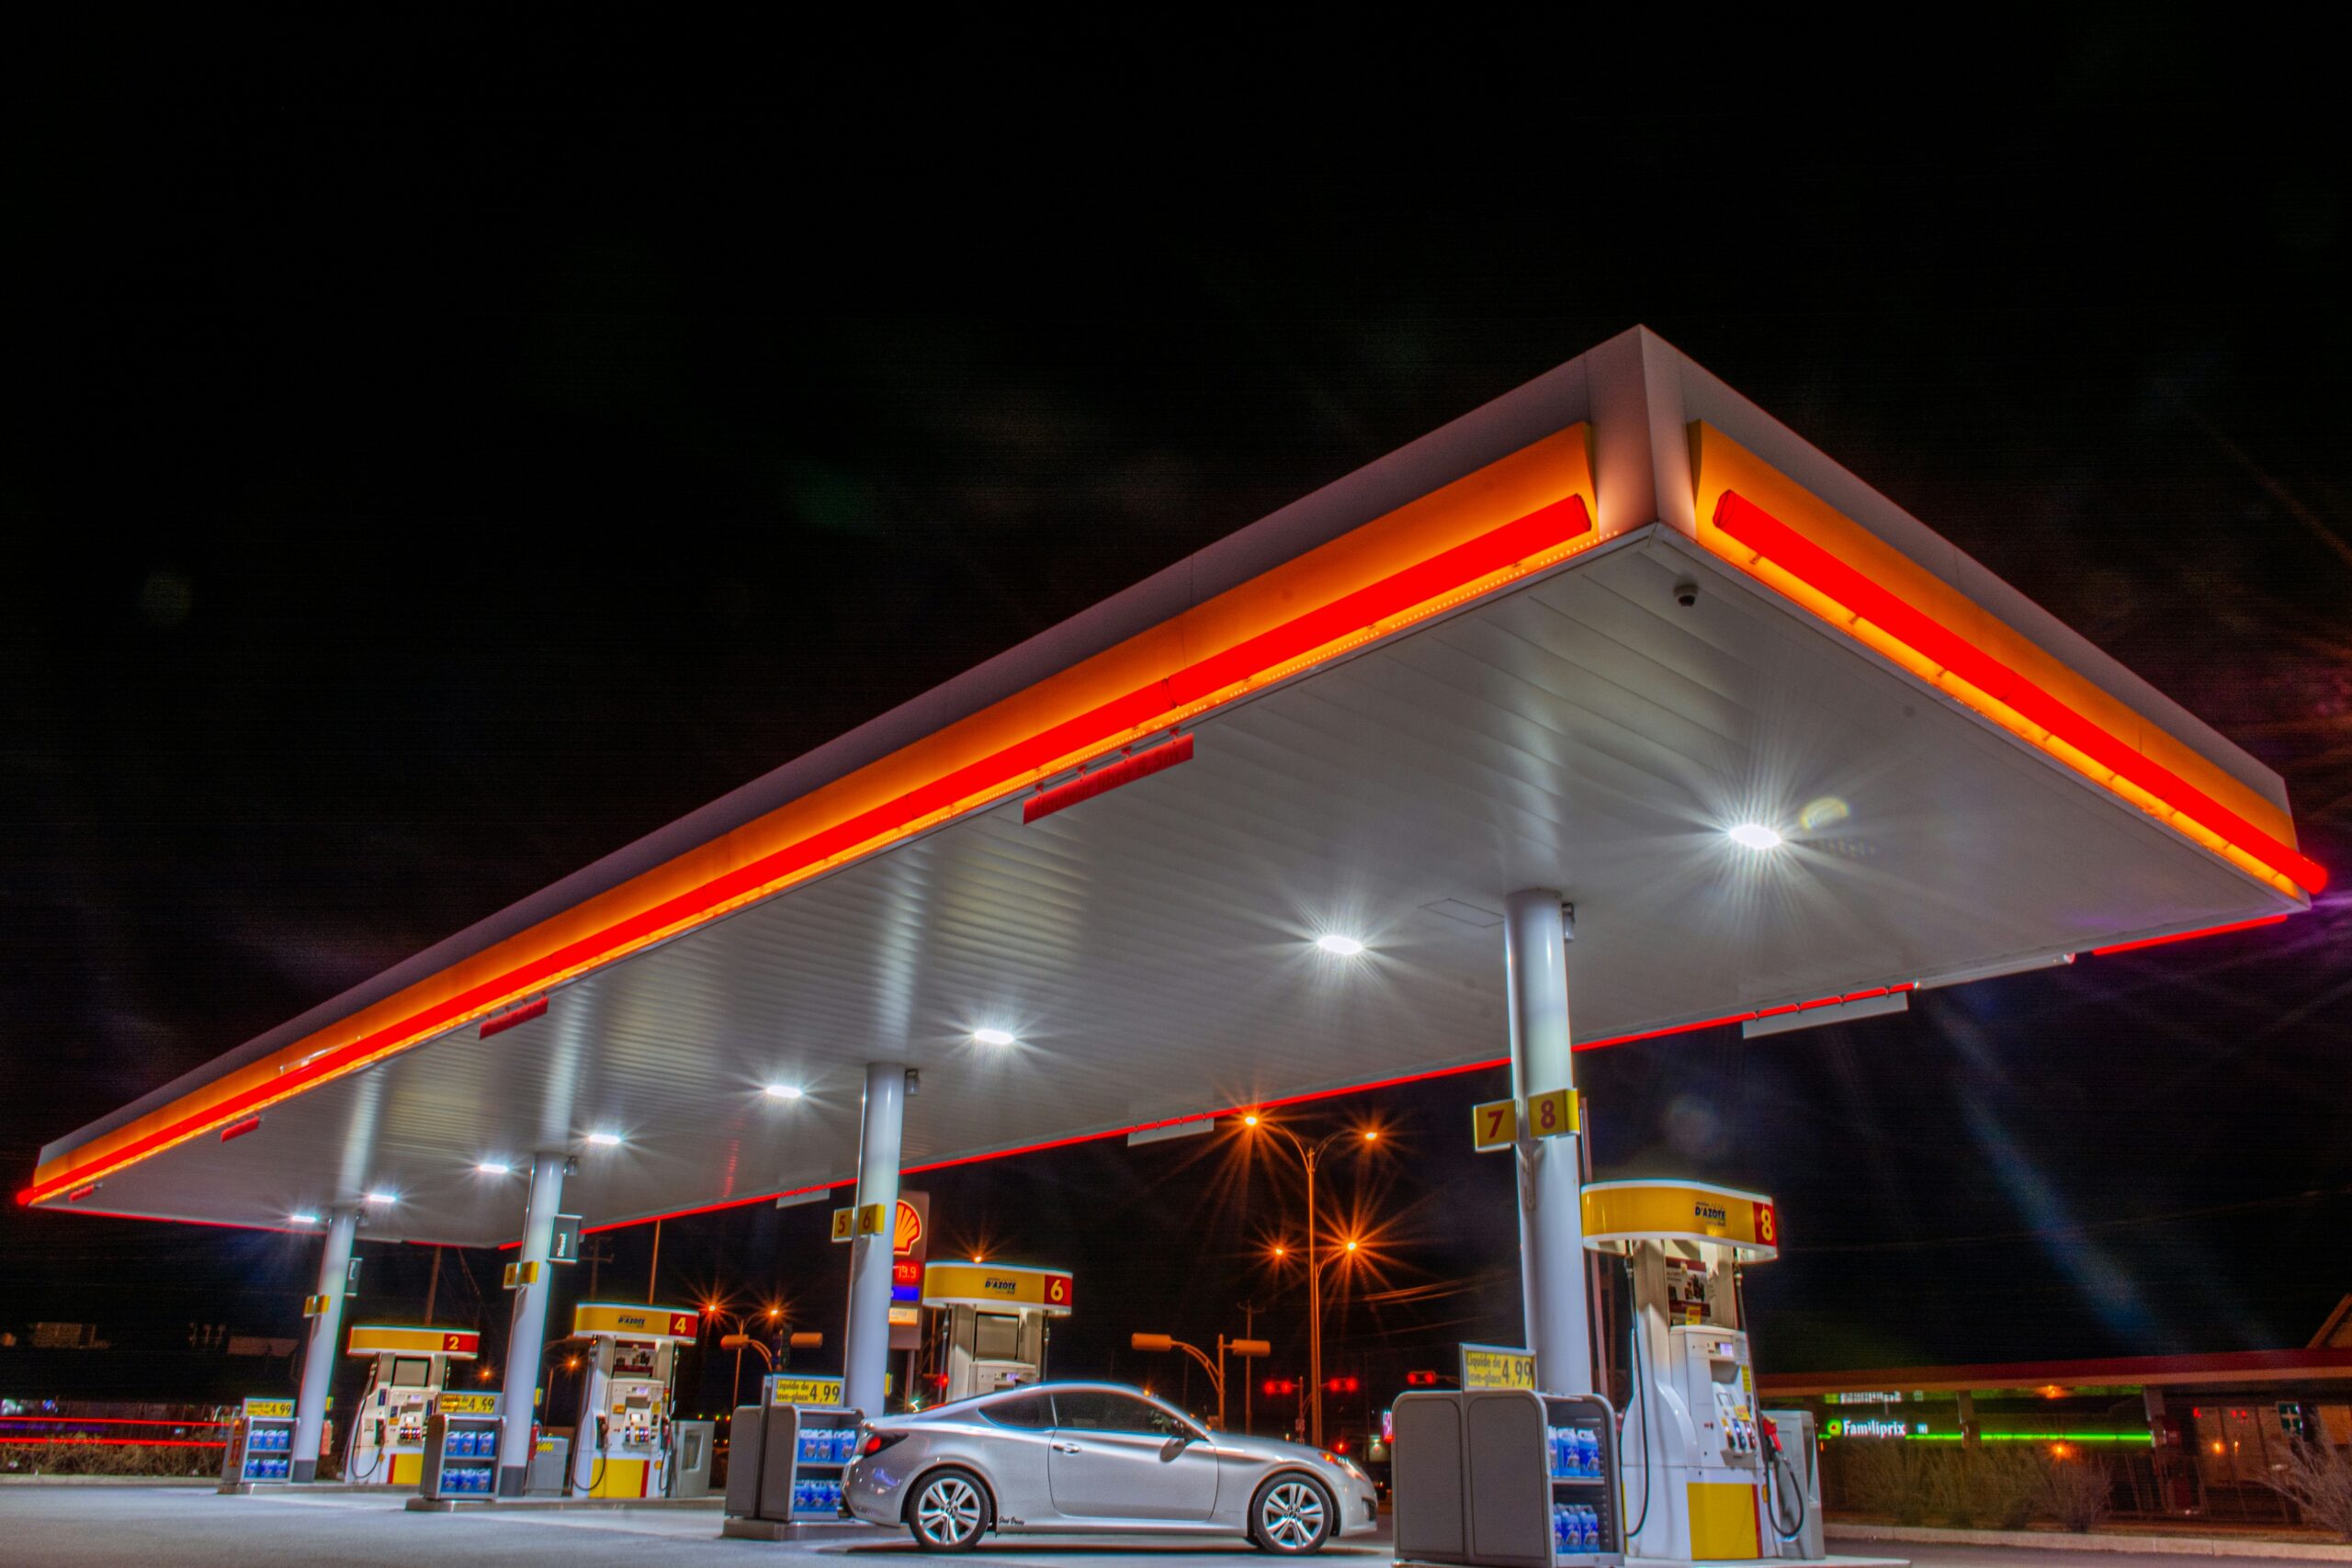 Oświetlona stacja benzynowa nocą, z lśniącymi dystrybutorami paliwa, gotowa na wprowadzenie nowego rodzaju benzyny E10.